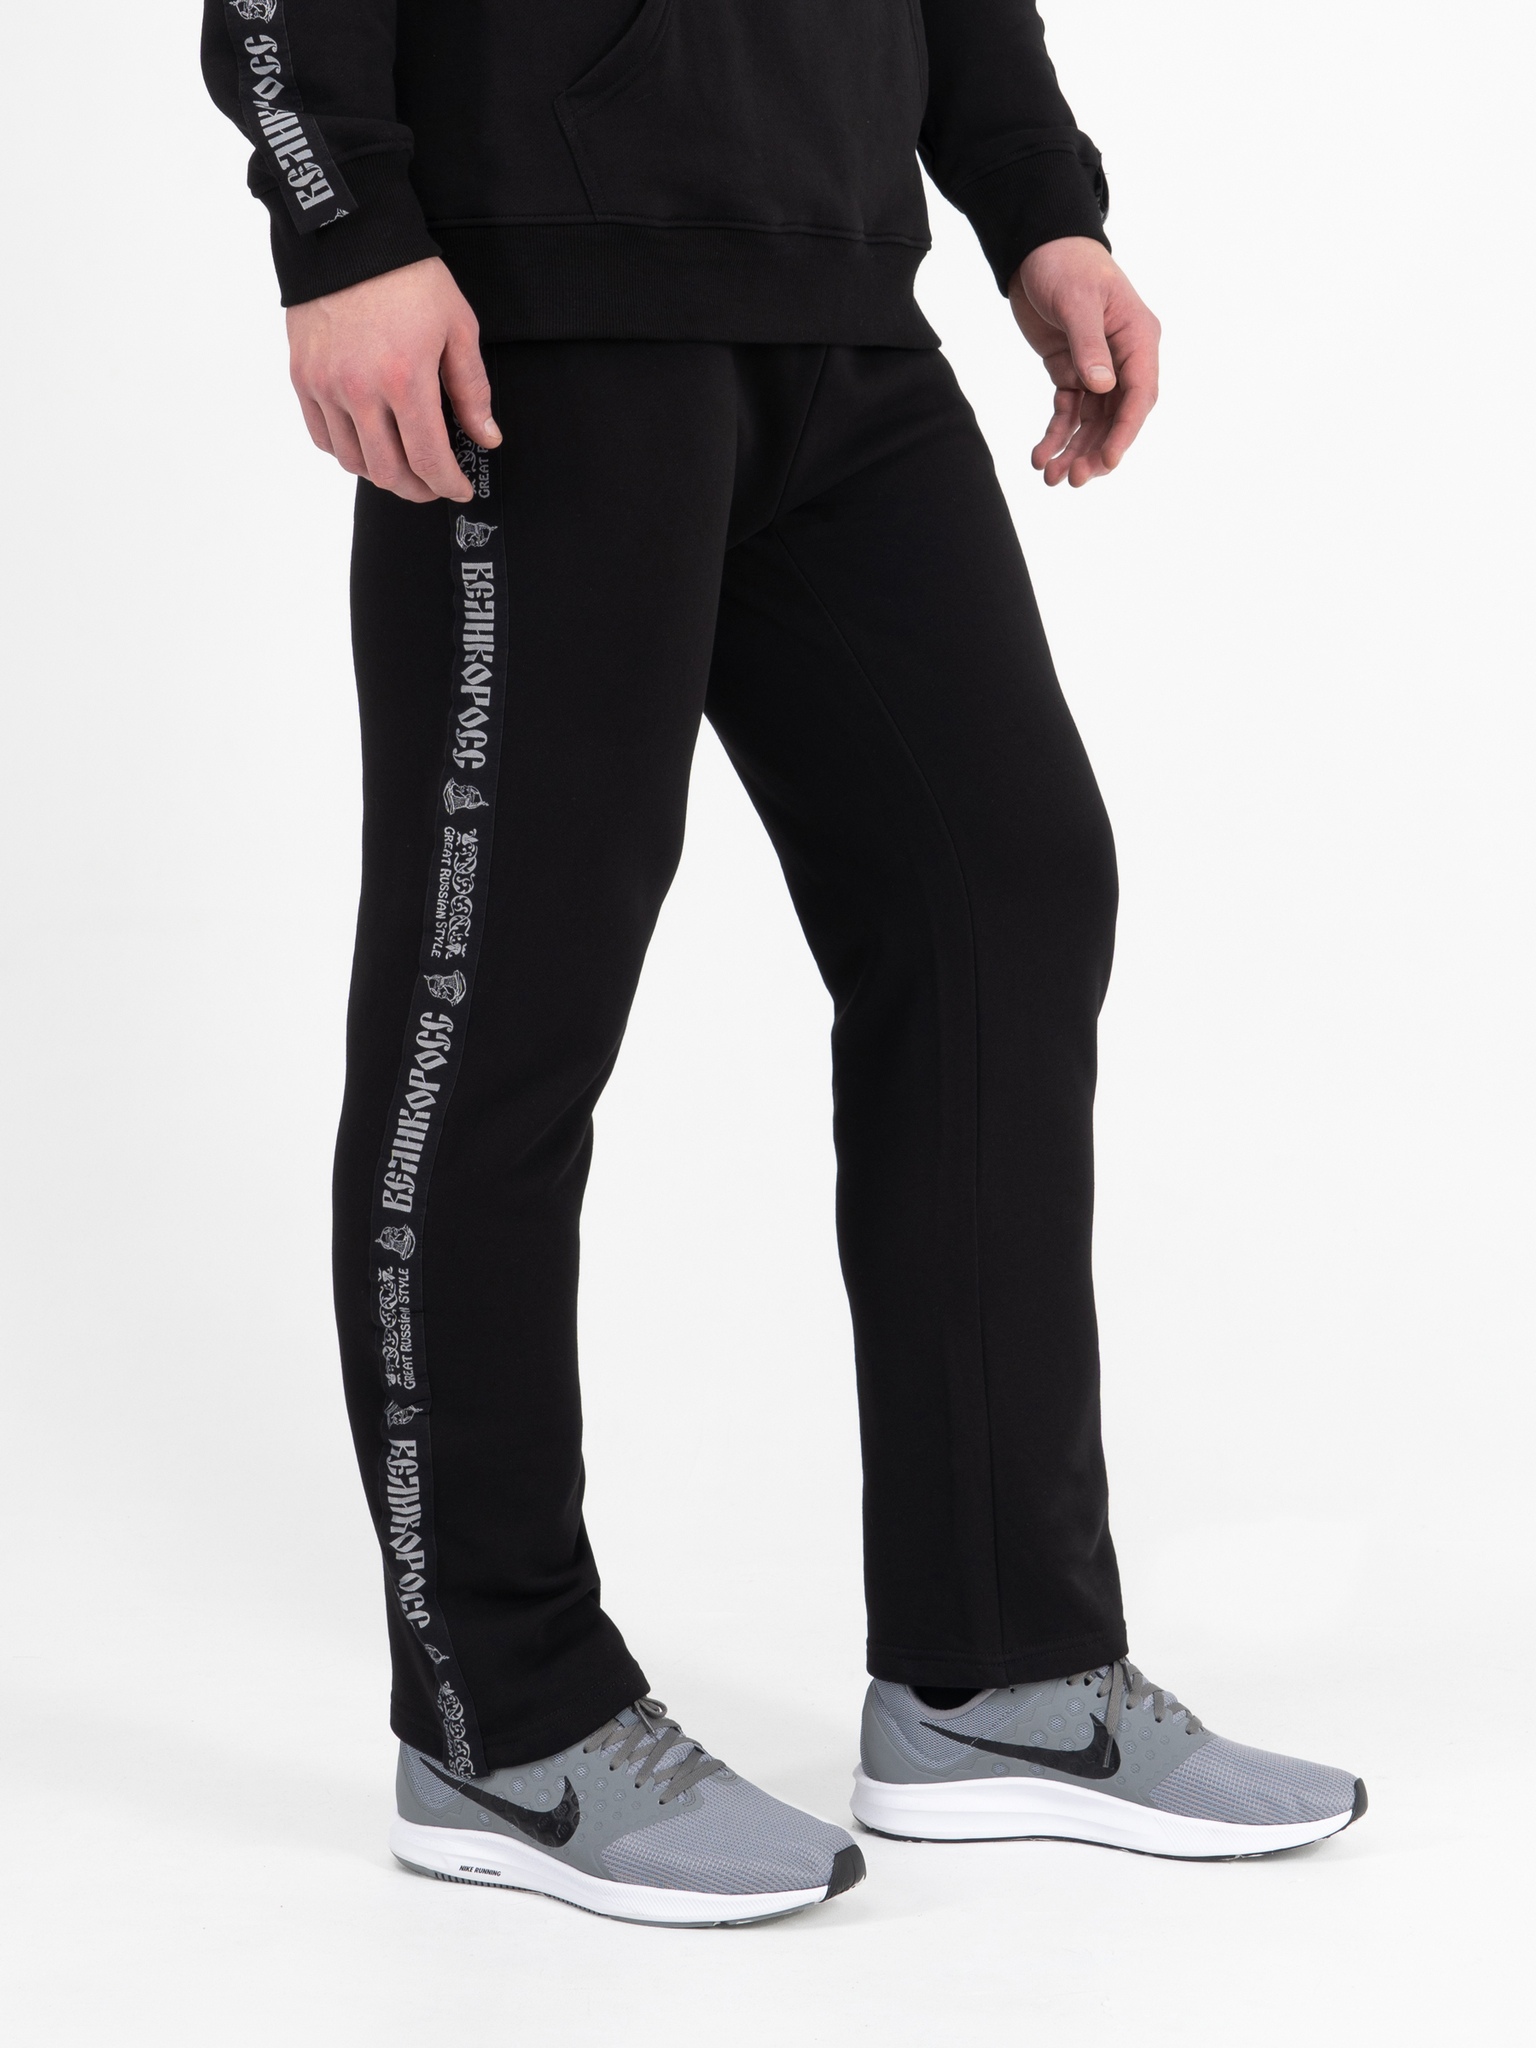 фото Спортивные брюки мужские великоросс bm черные 54 ru